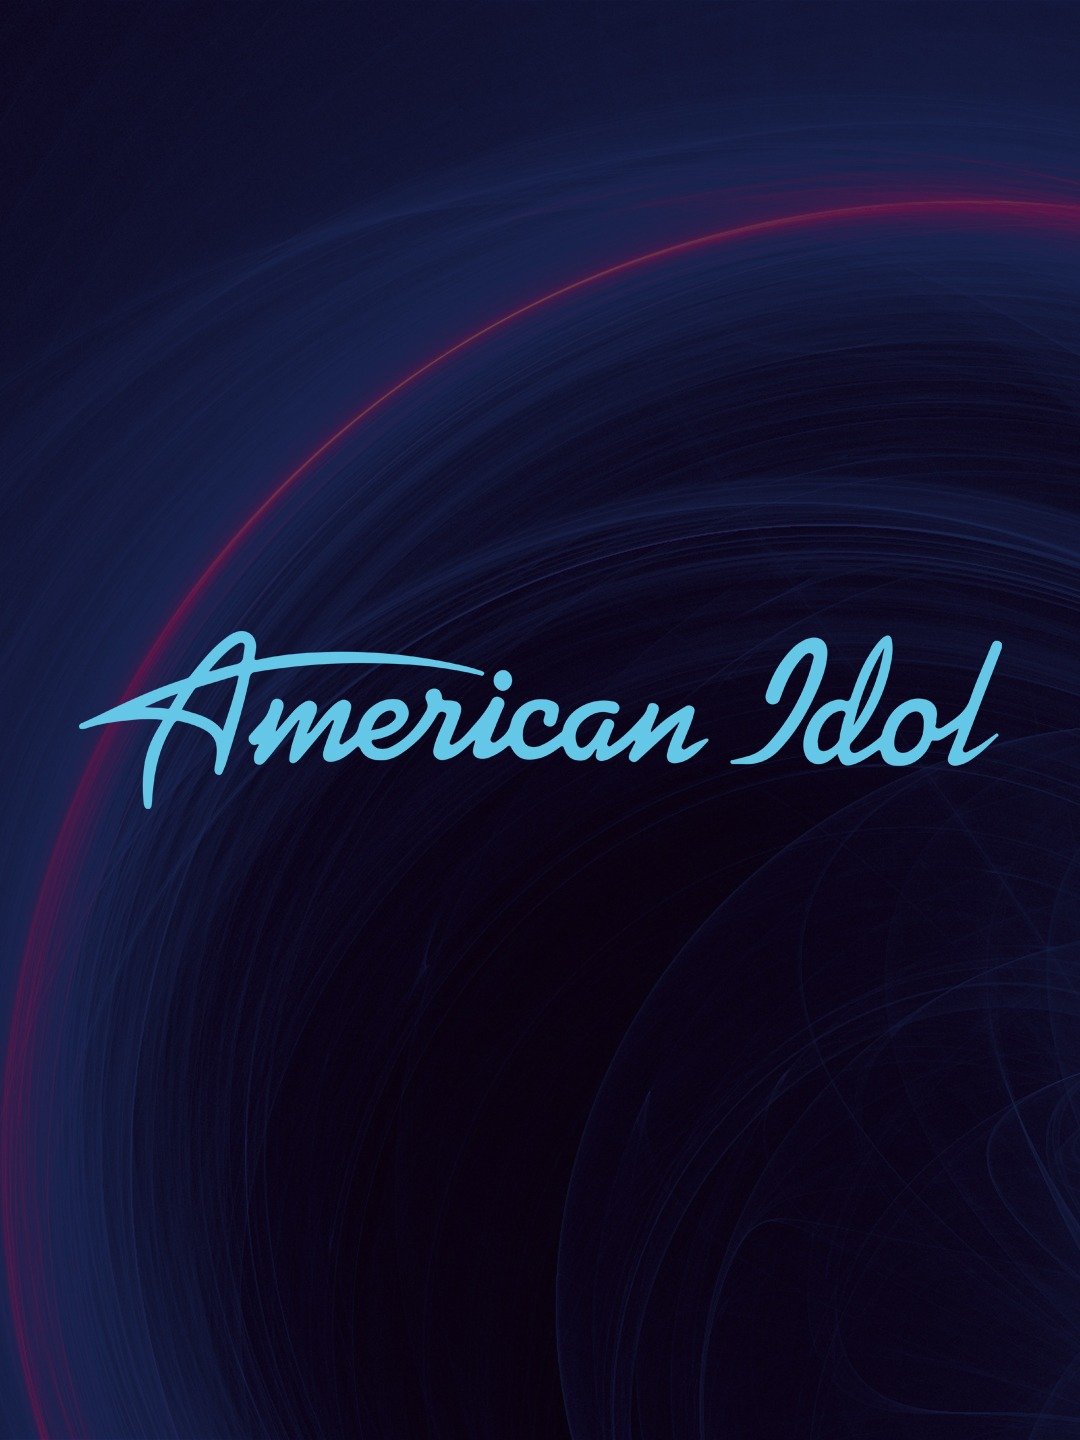 American Idol Season 22 Episode 8 "708 (Top 24 at Disney's Aulani